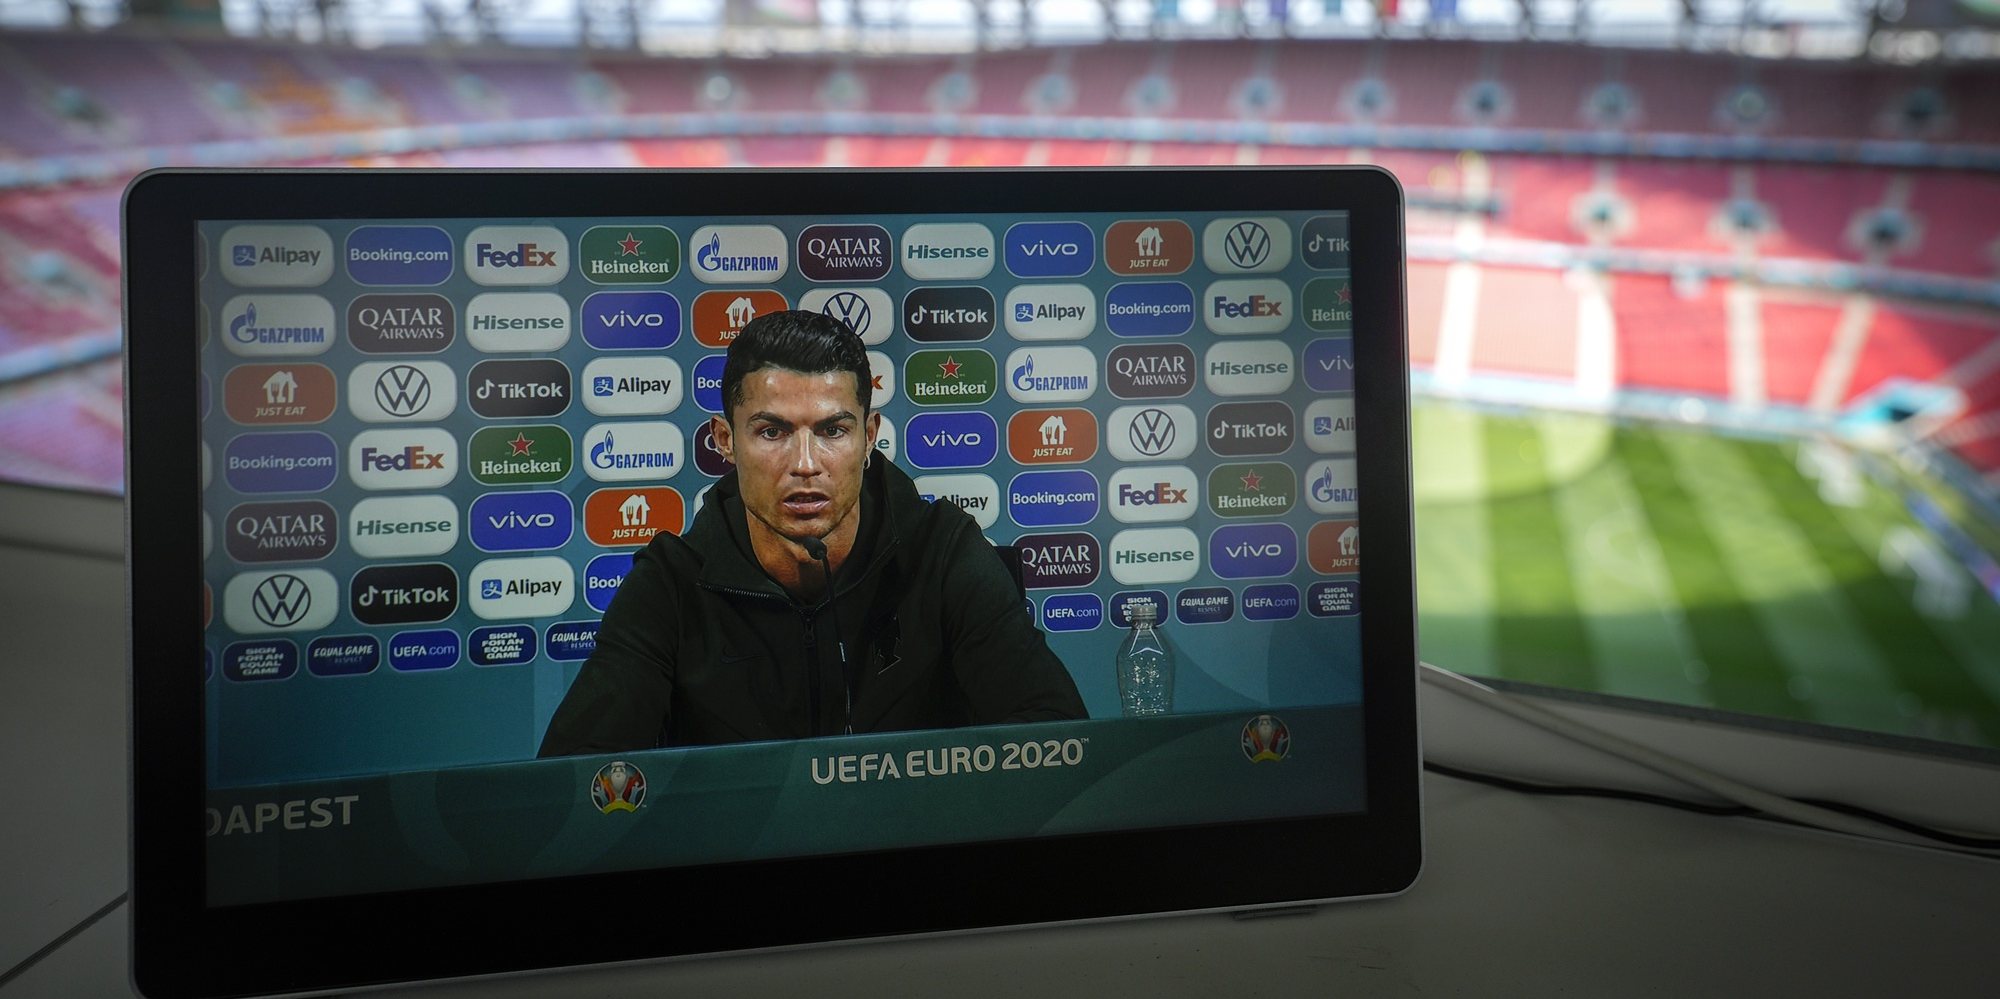 Uma televisão transmite a conferência de imprensa do jogador da seleção de Portugal Cristiano Ronaldo na véspera do jogo com a seleção da Hungria, no Estádio Puskás Aréna, em Budapeste, Hungria, 14 de junho de 2021. A seleção de Portugal defronta a seleção da Hungria em jogo do grupo F do Euro2020 a 15 de junho 2021. HUGO DELGADO/LUSA